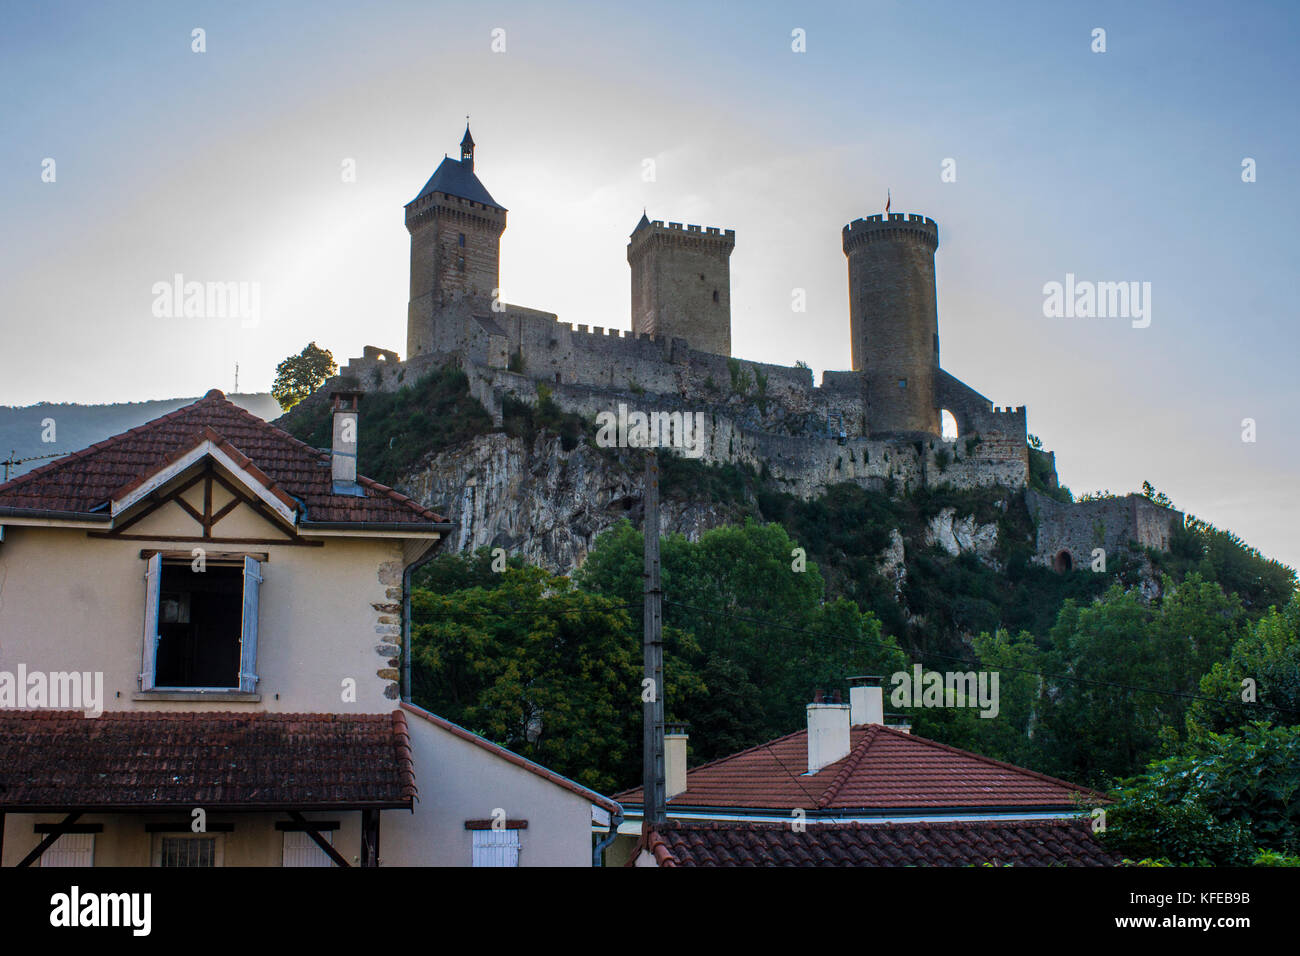 Le château de Foix, un château qui domine la ville de Foix dans le département français de l'Ariège Banque D'Images